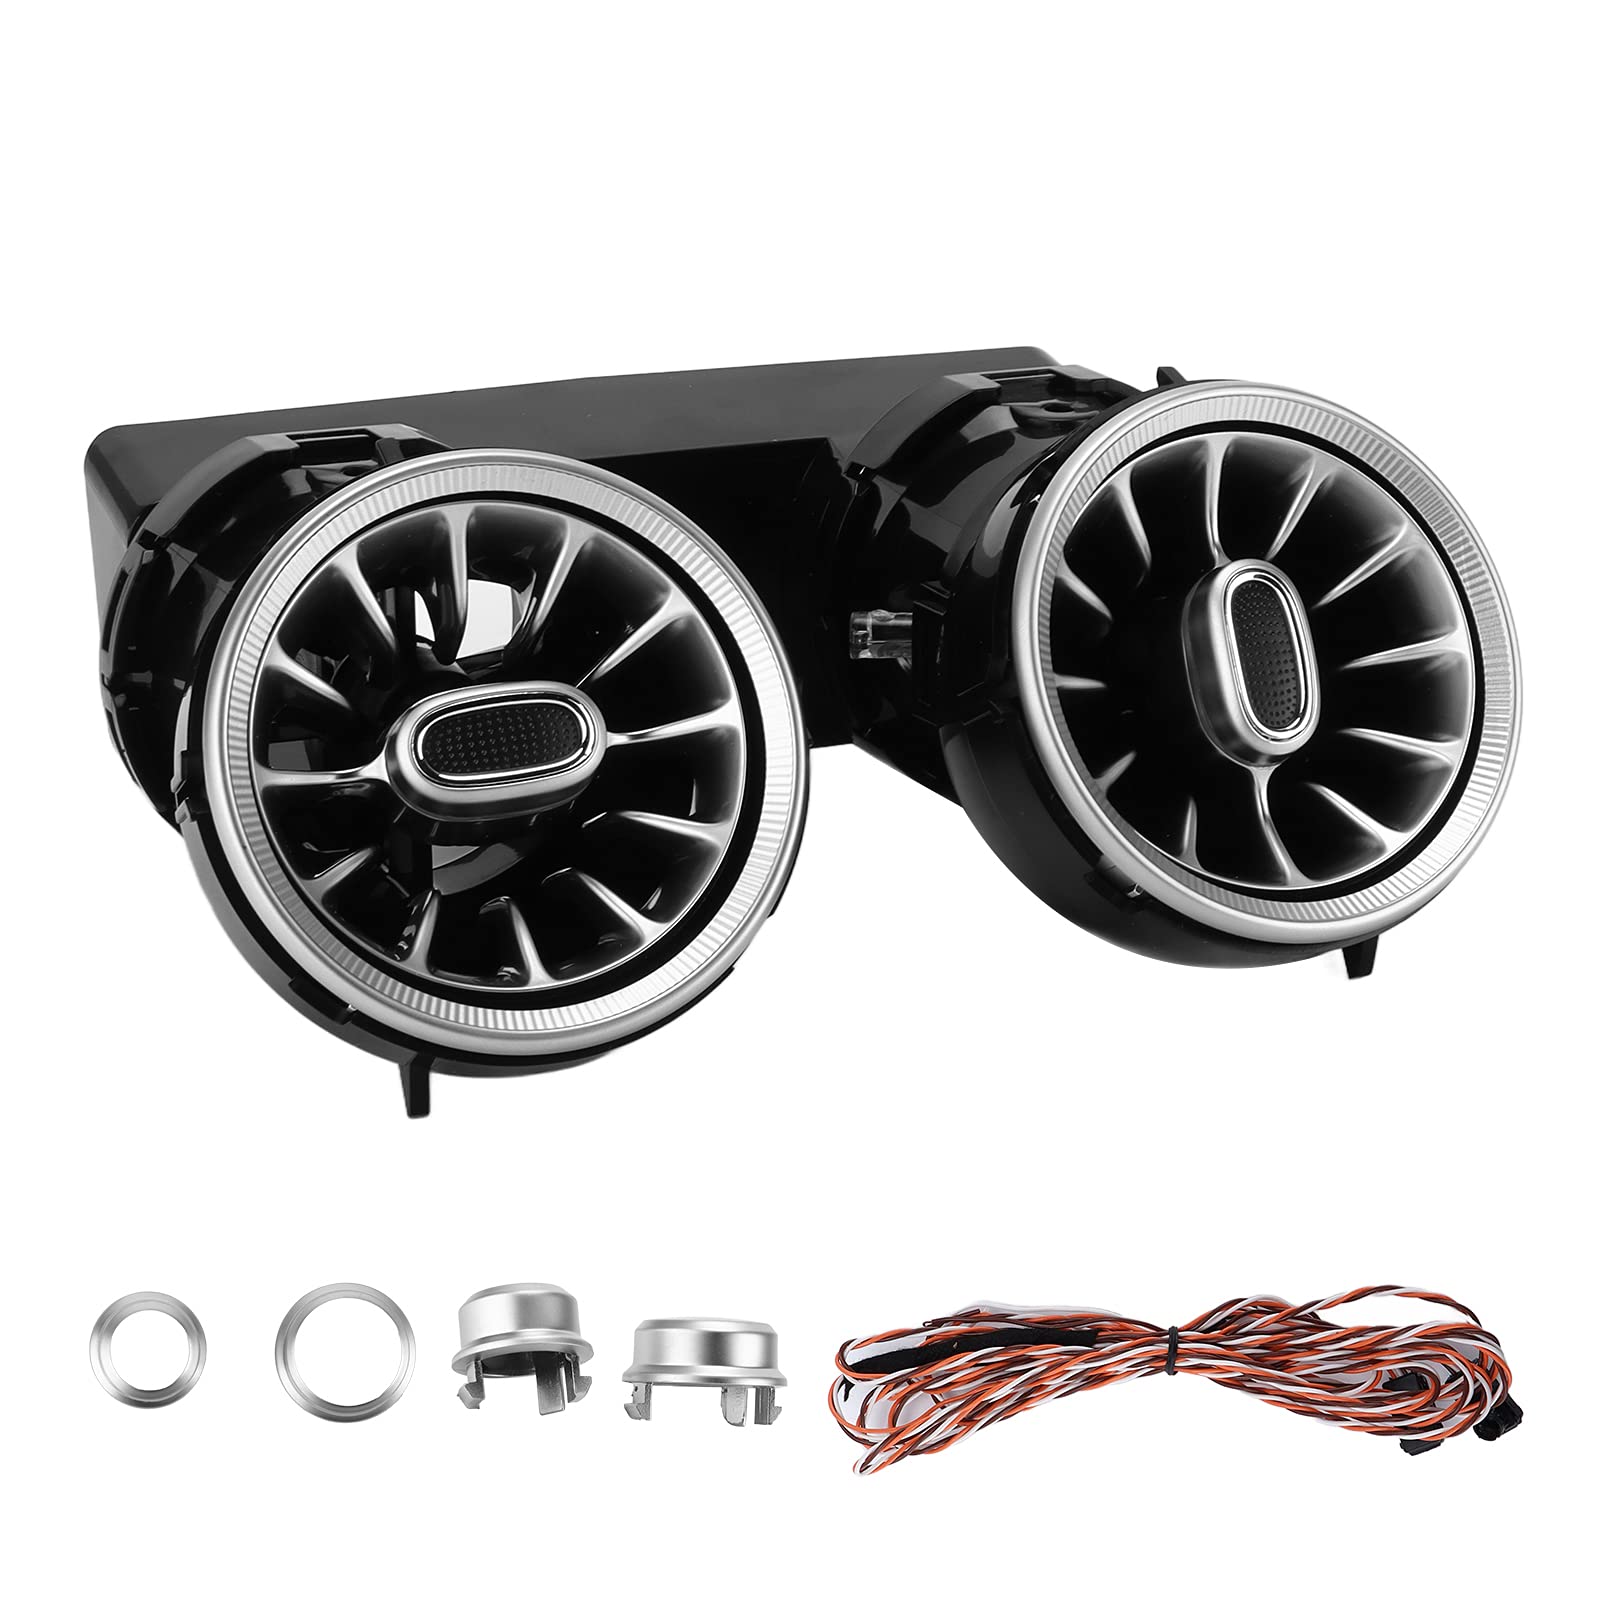 Akozon Turbo Umgebungslicht, 3-farbiges Hinteres LED-Turbinenentlüftungs-Umgebungslicht-Kit für Mercedes-Benz C-GLC-Klasse W205 X253 2015-2018 von Akozon